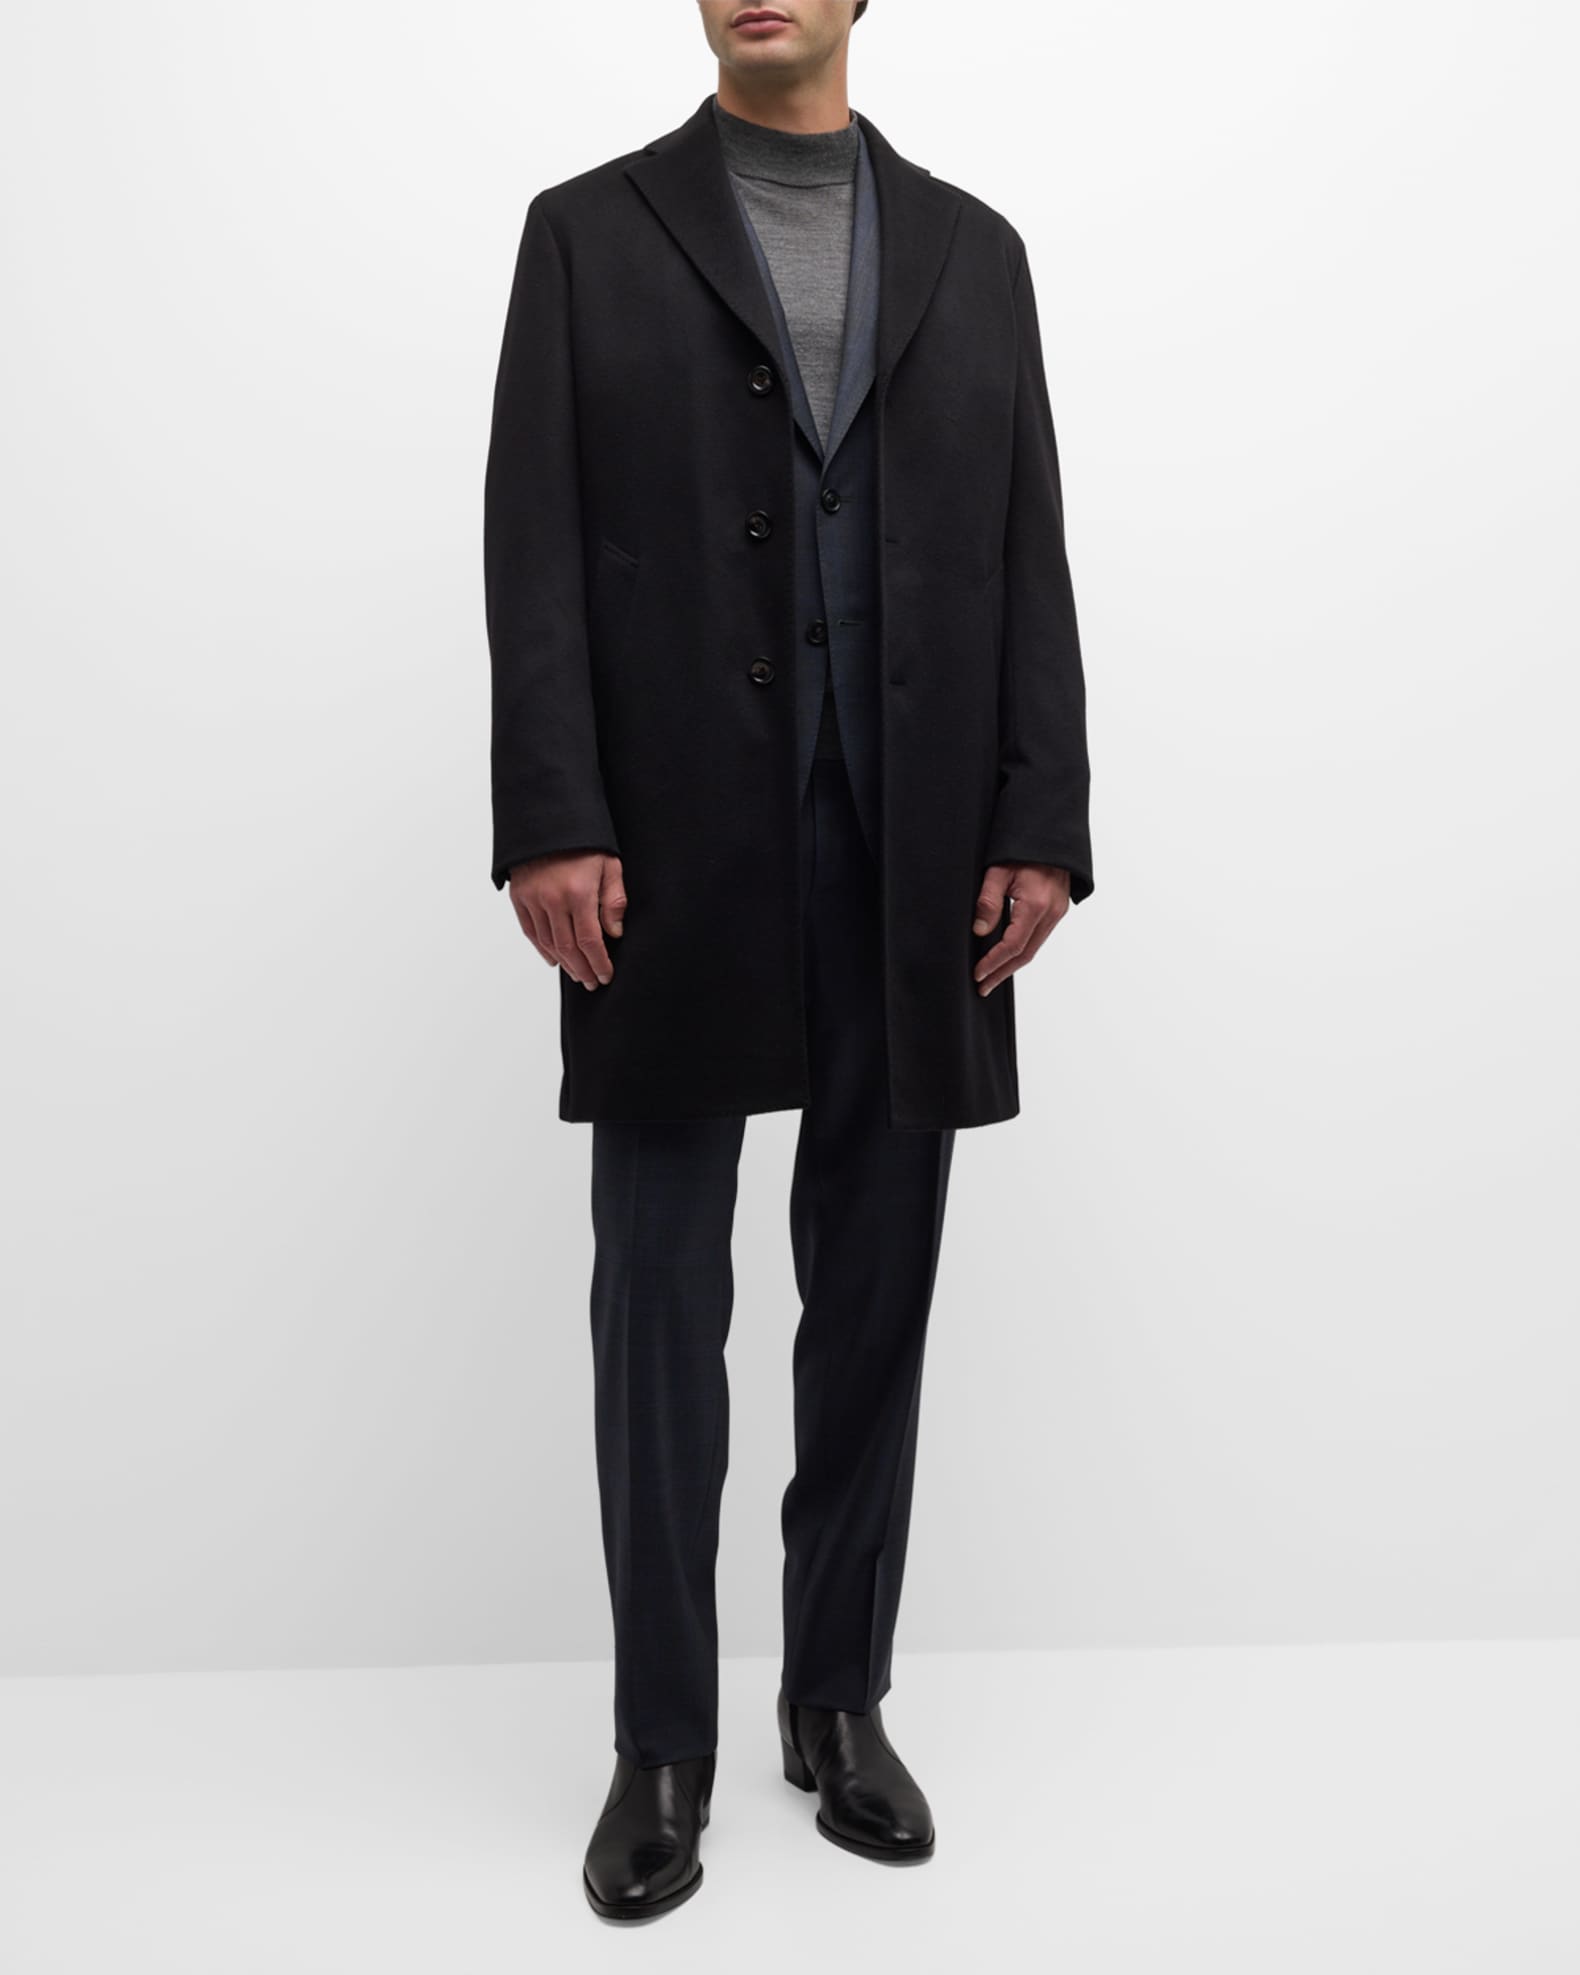 Neiman Marcus Men's Solid Cashmere Topcoat | Neiman Marcus